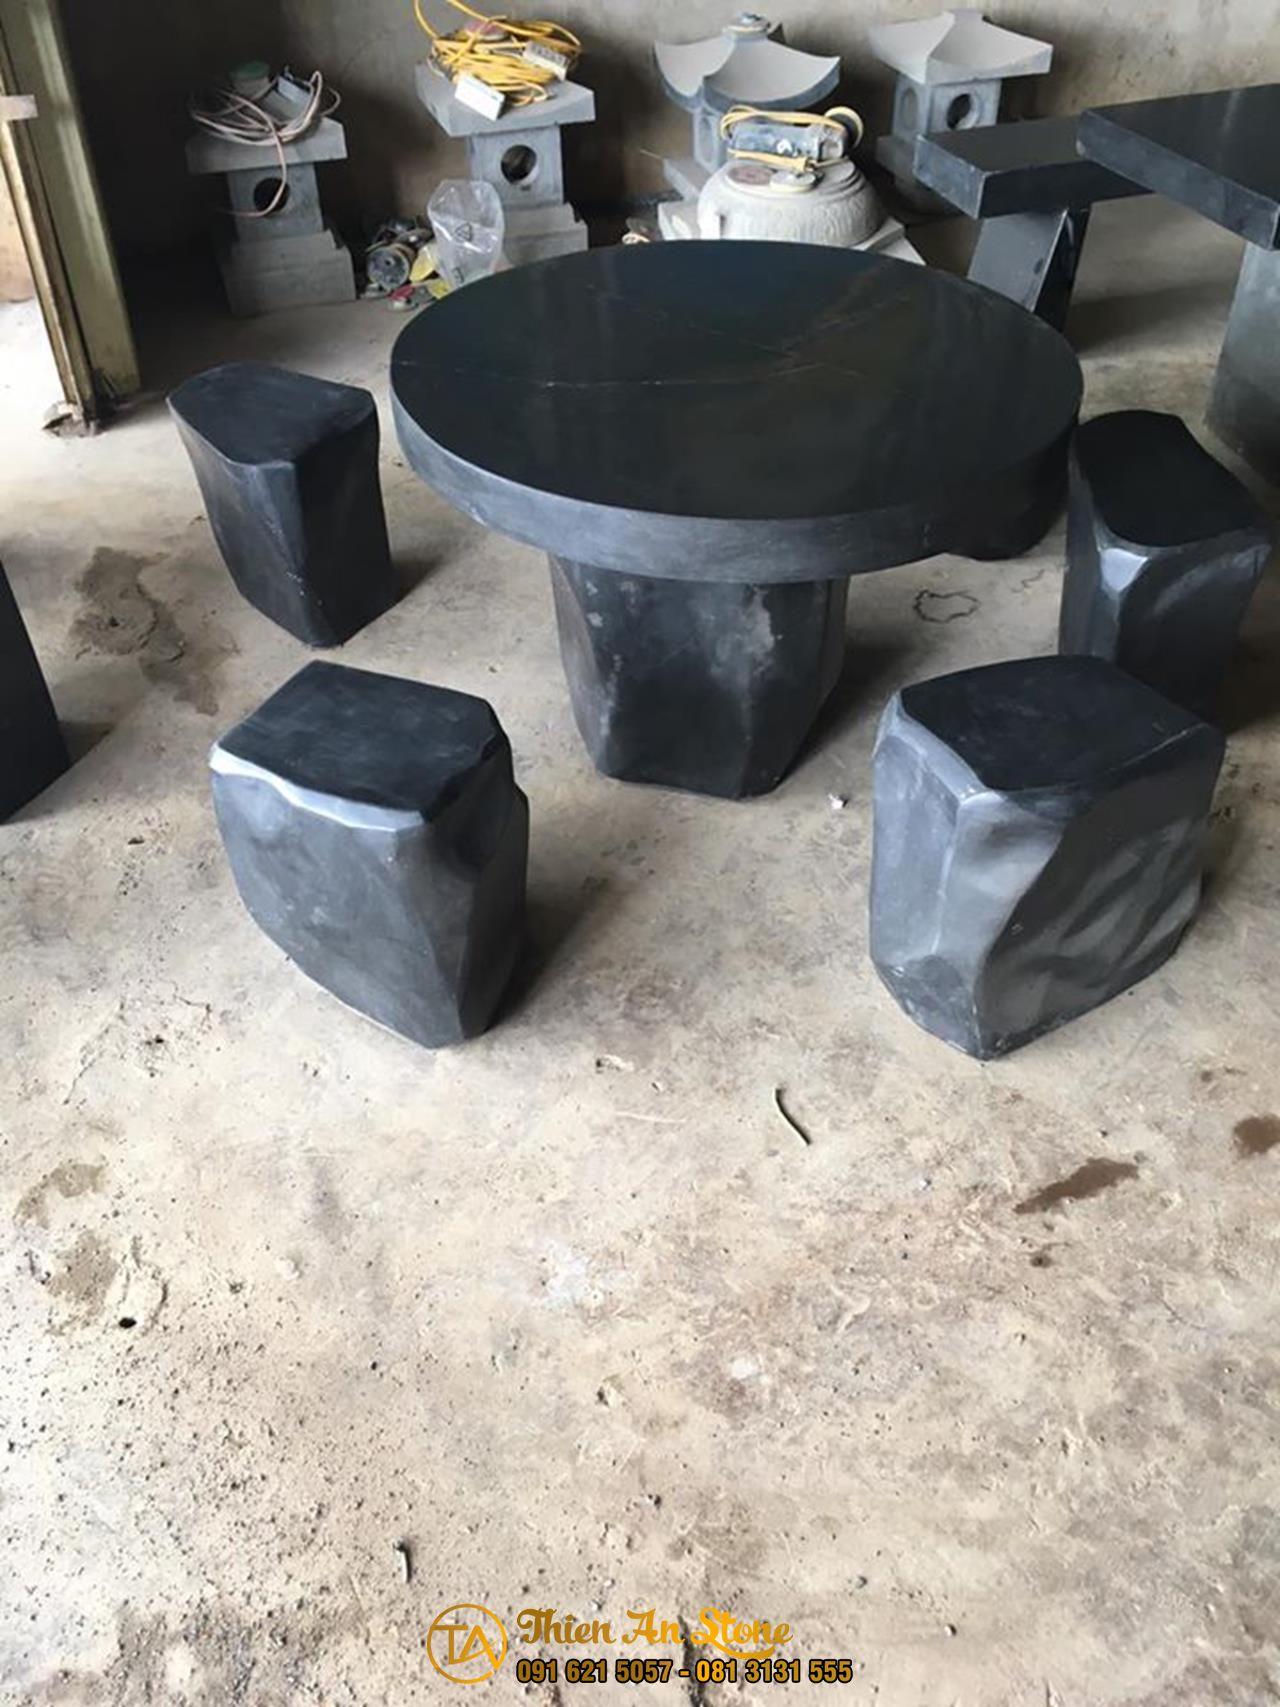 Bàn ghế đá bazan được làm từ loại đá gì?
- Response: Bàn ghế đá bazan được làm từ những tảng đá bazan xám màu đen, đá được hình thành do mắc ma phun trào.

